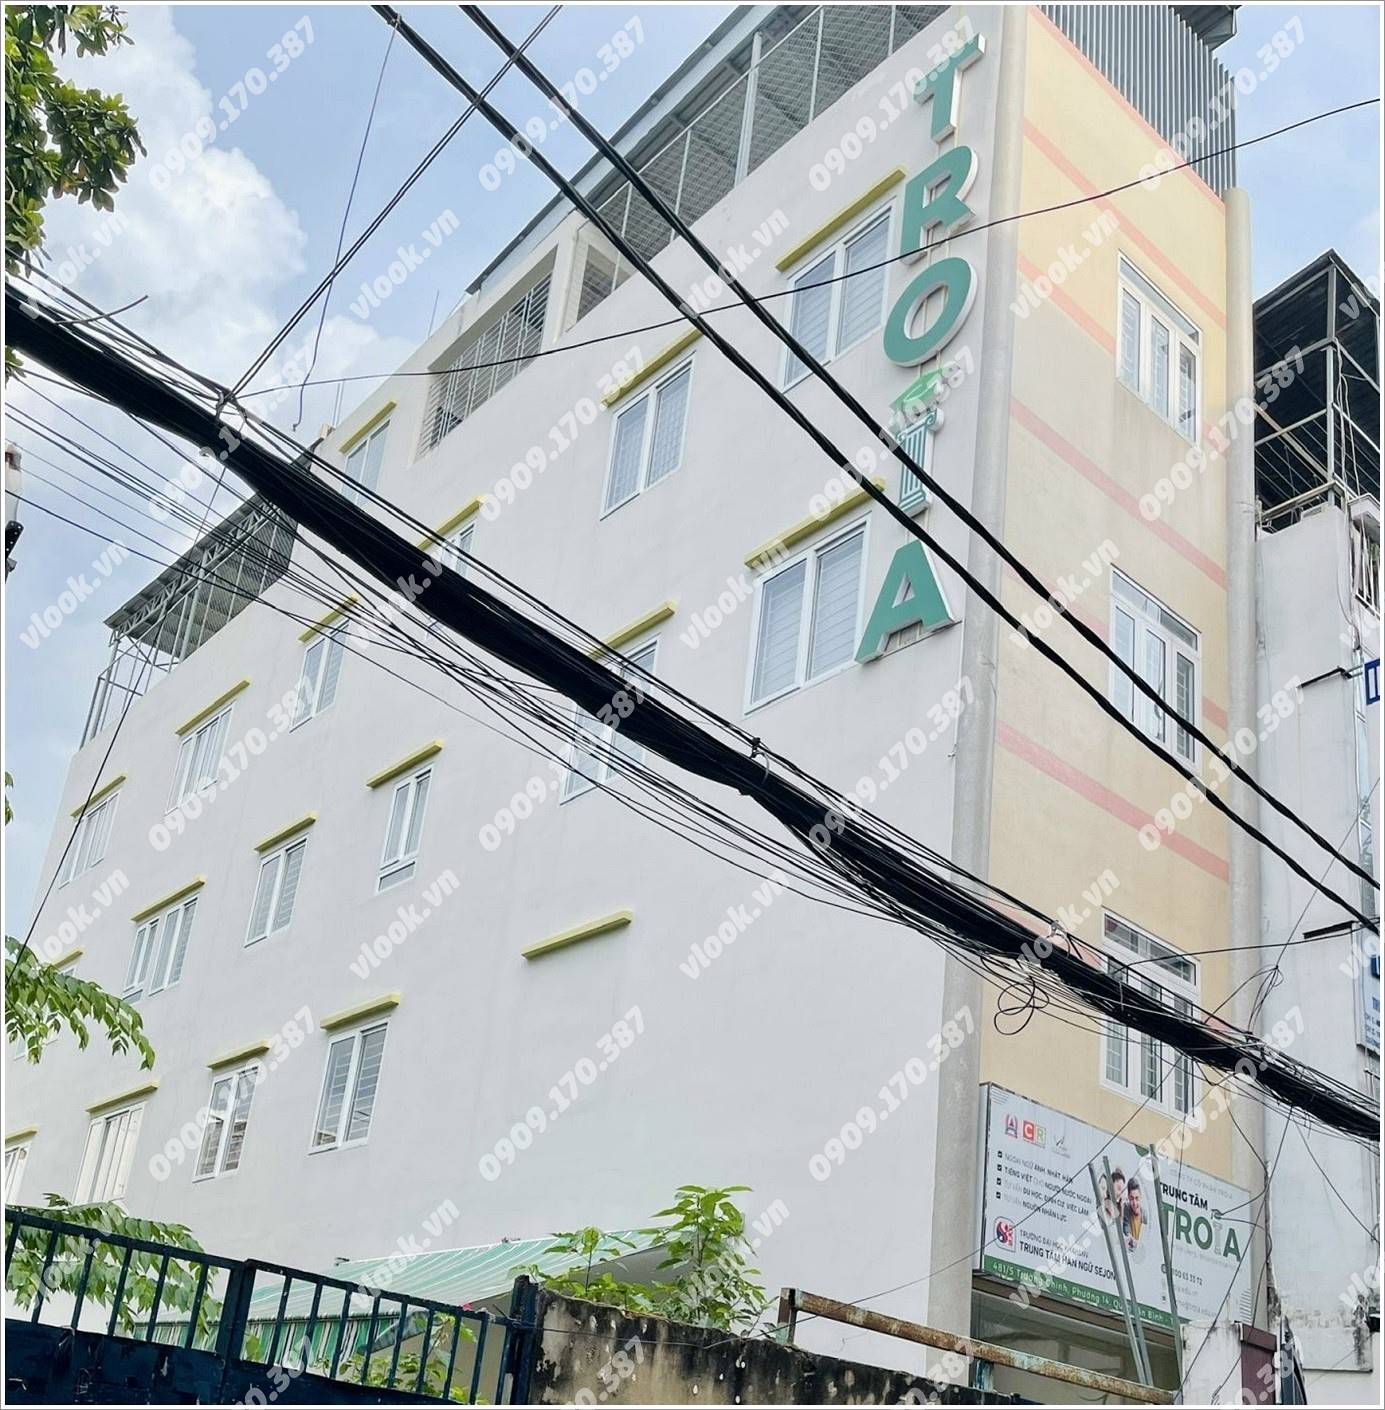 Cao ốc văn phòng cho thuê tòa nhà Troia Building, Trường Chinh, Quận Tân Bình, TP.HCM - vlook.vn